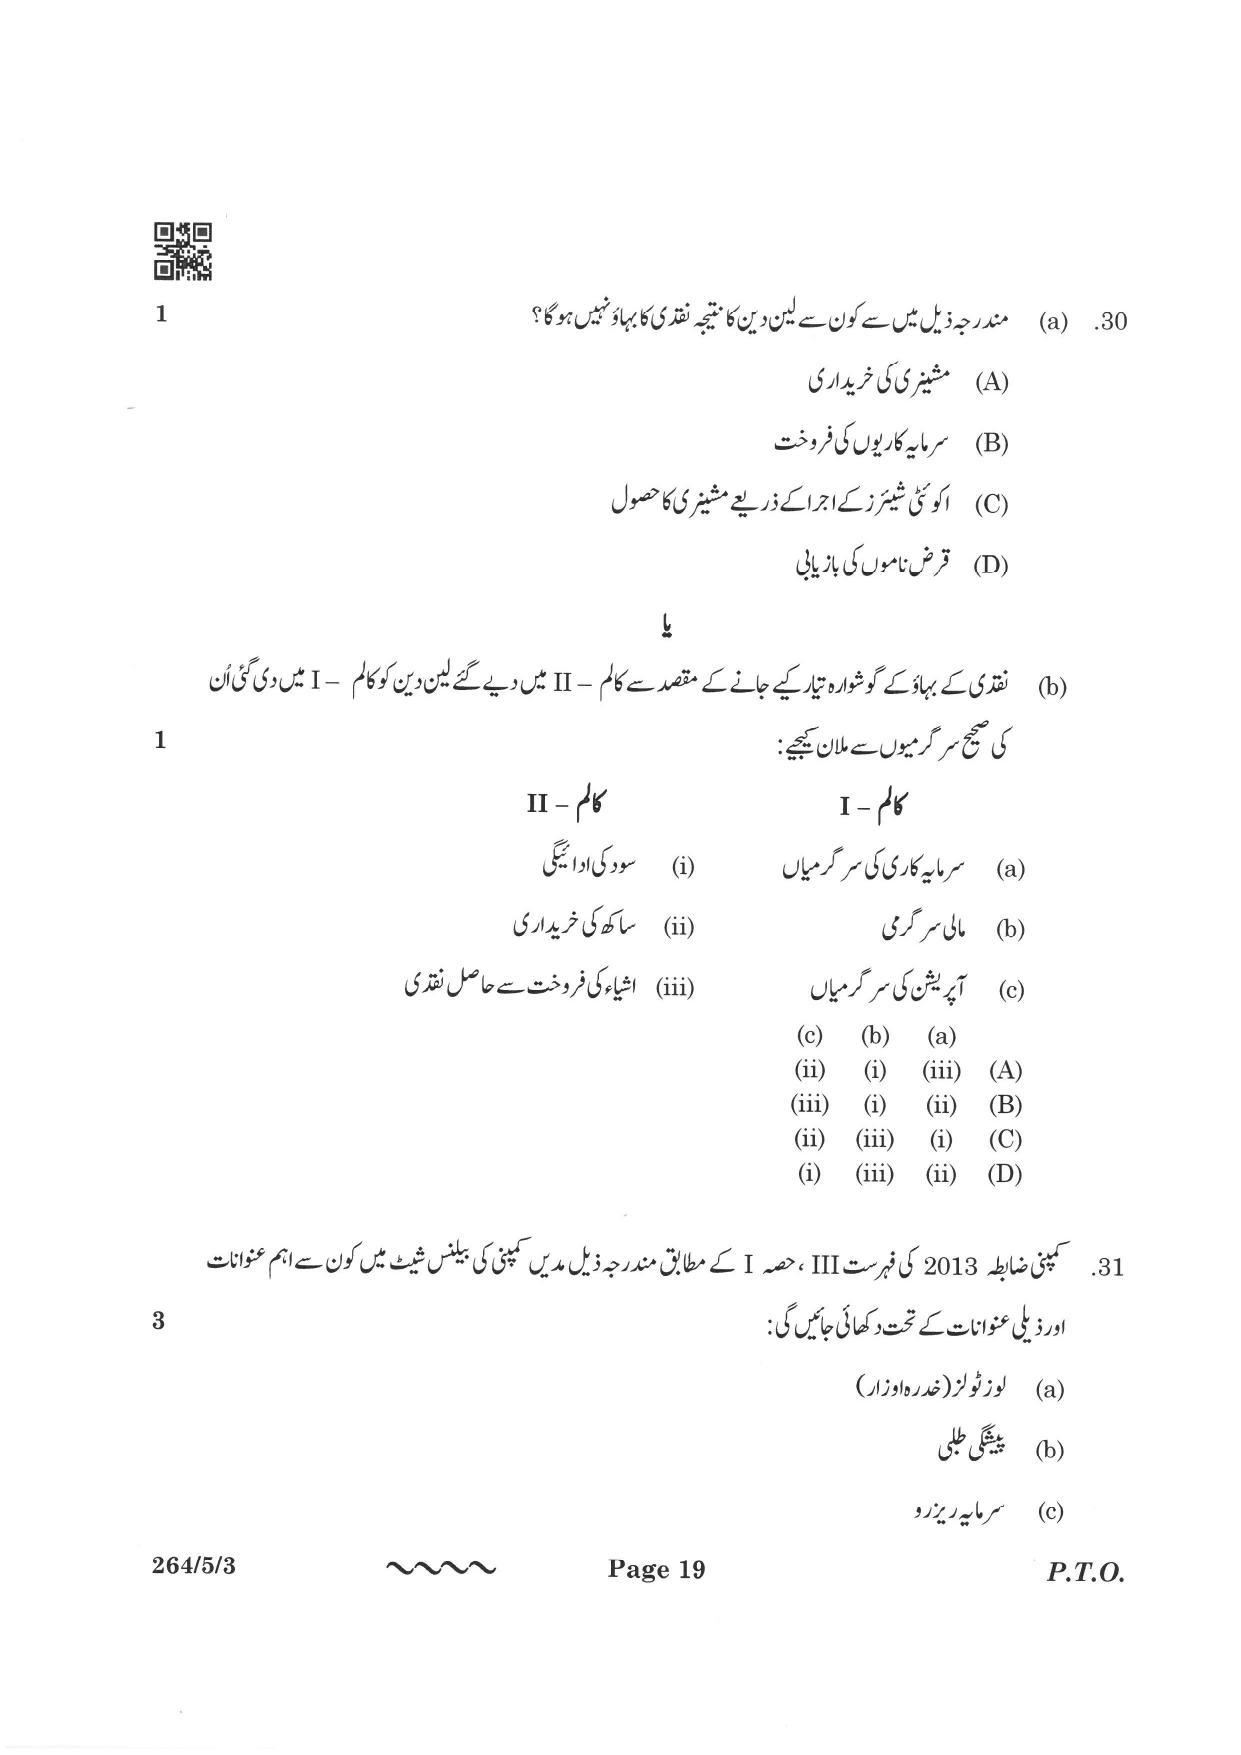 CBSE Class 12 264-5-3 Accountancy Urdu Version 2023 Question Paper - Page 19